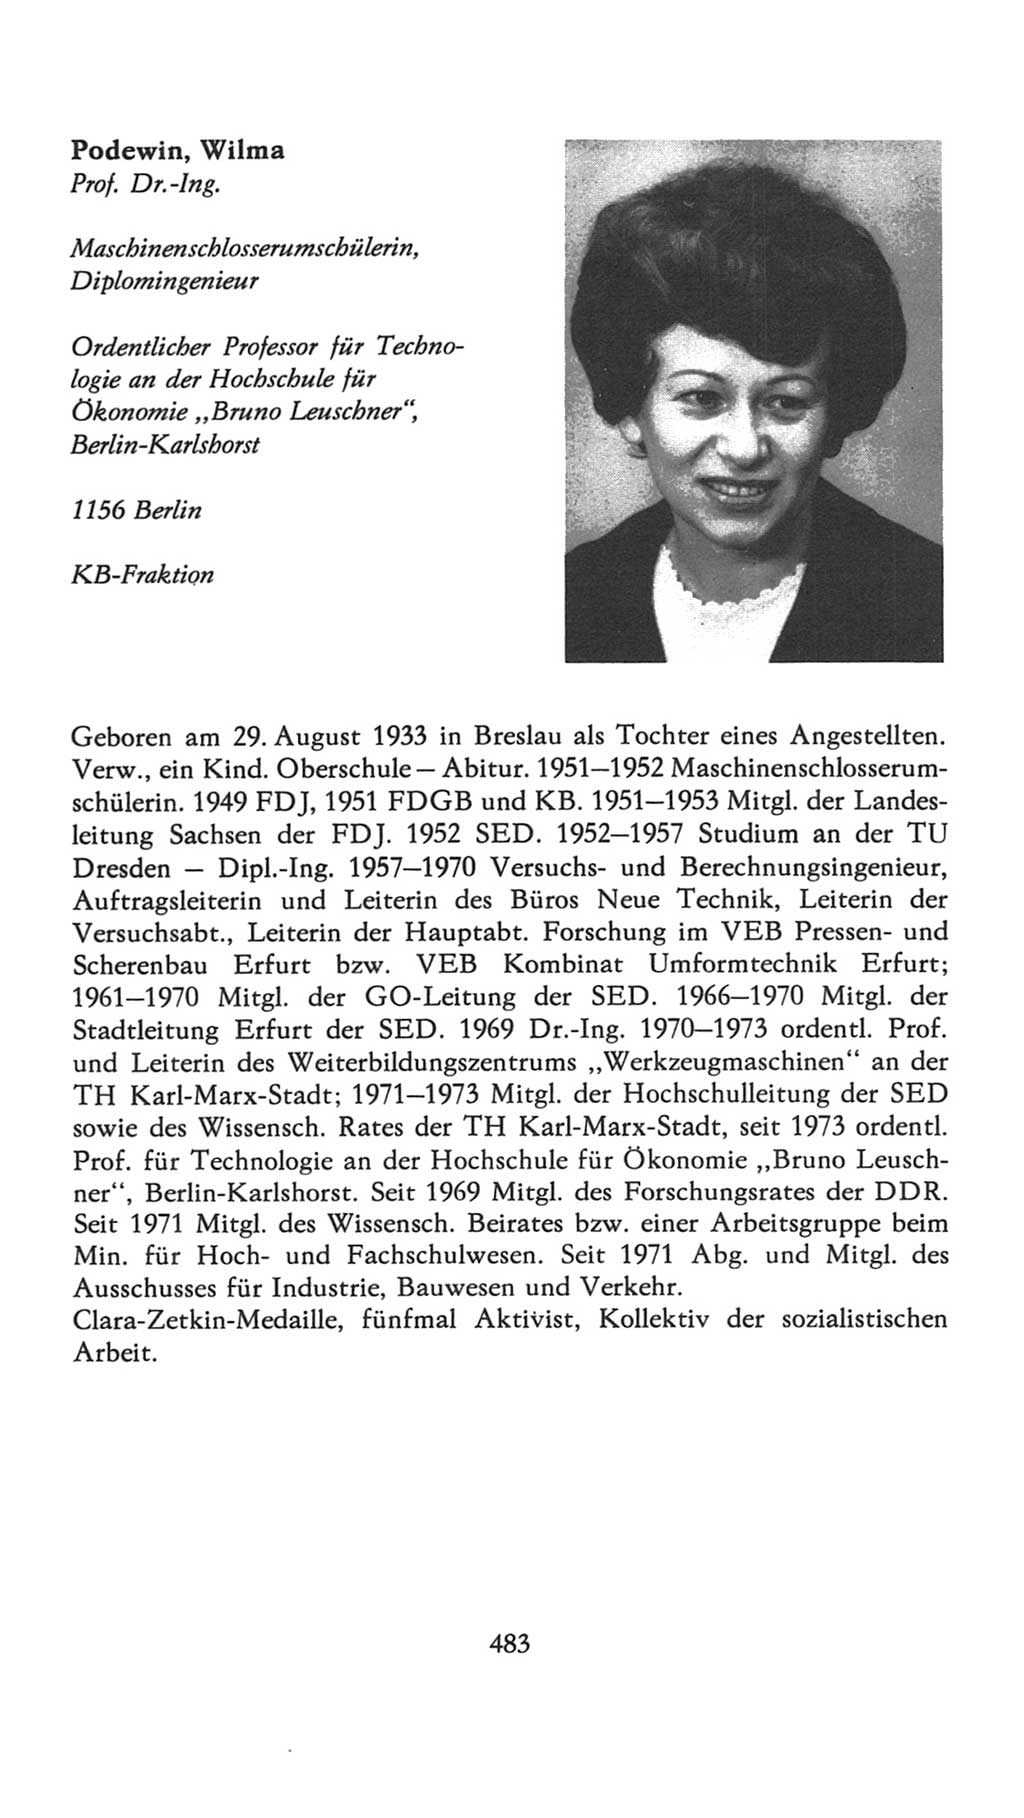 Volkskammer (VK) der Deutschen Demokratischen Republik (DDR), 7. Wahlperiode 1976-1981, Seite 483 (VK. DDR 7. WP. 1976-1981, S. 483)